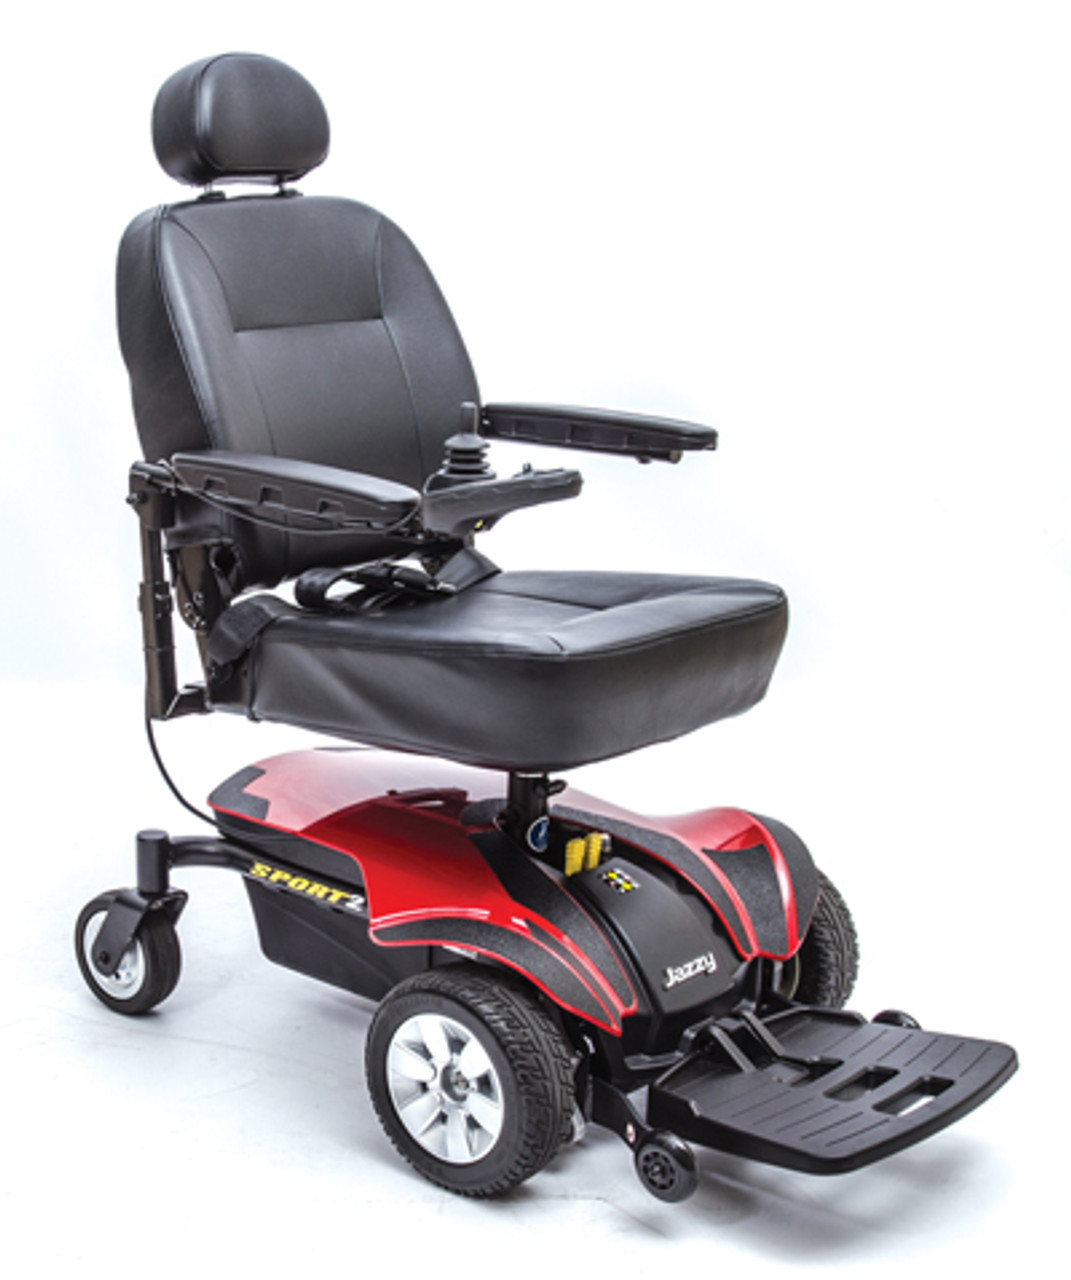 Jazzy Sport 2 Power Wheelchair - FDA Class II Medical Device*